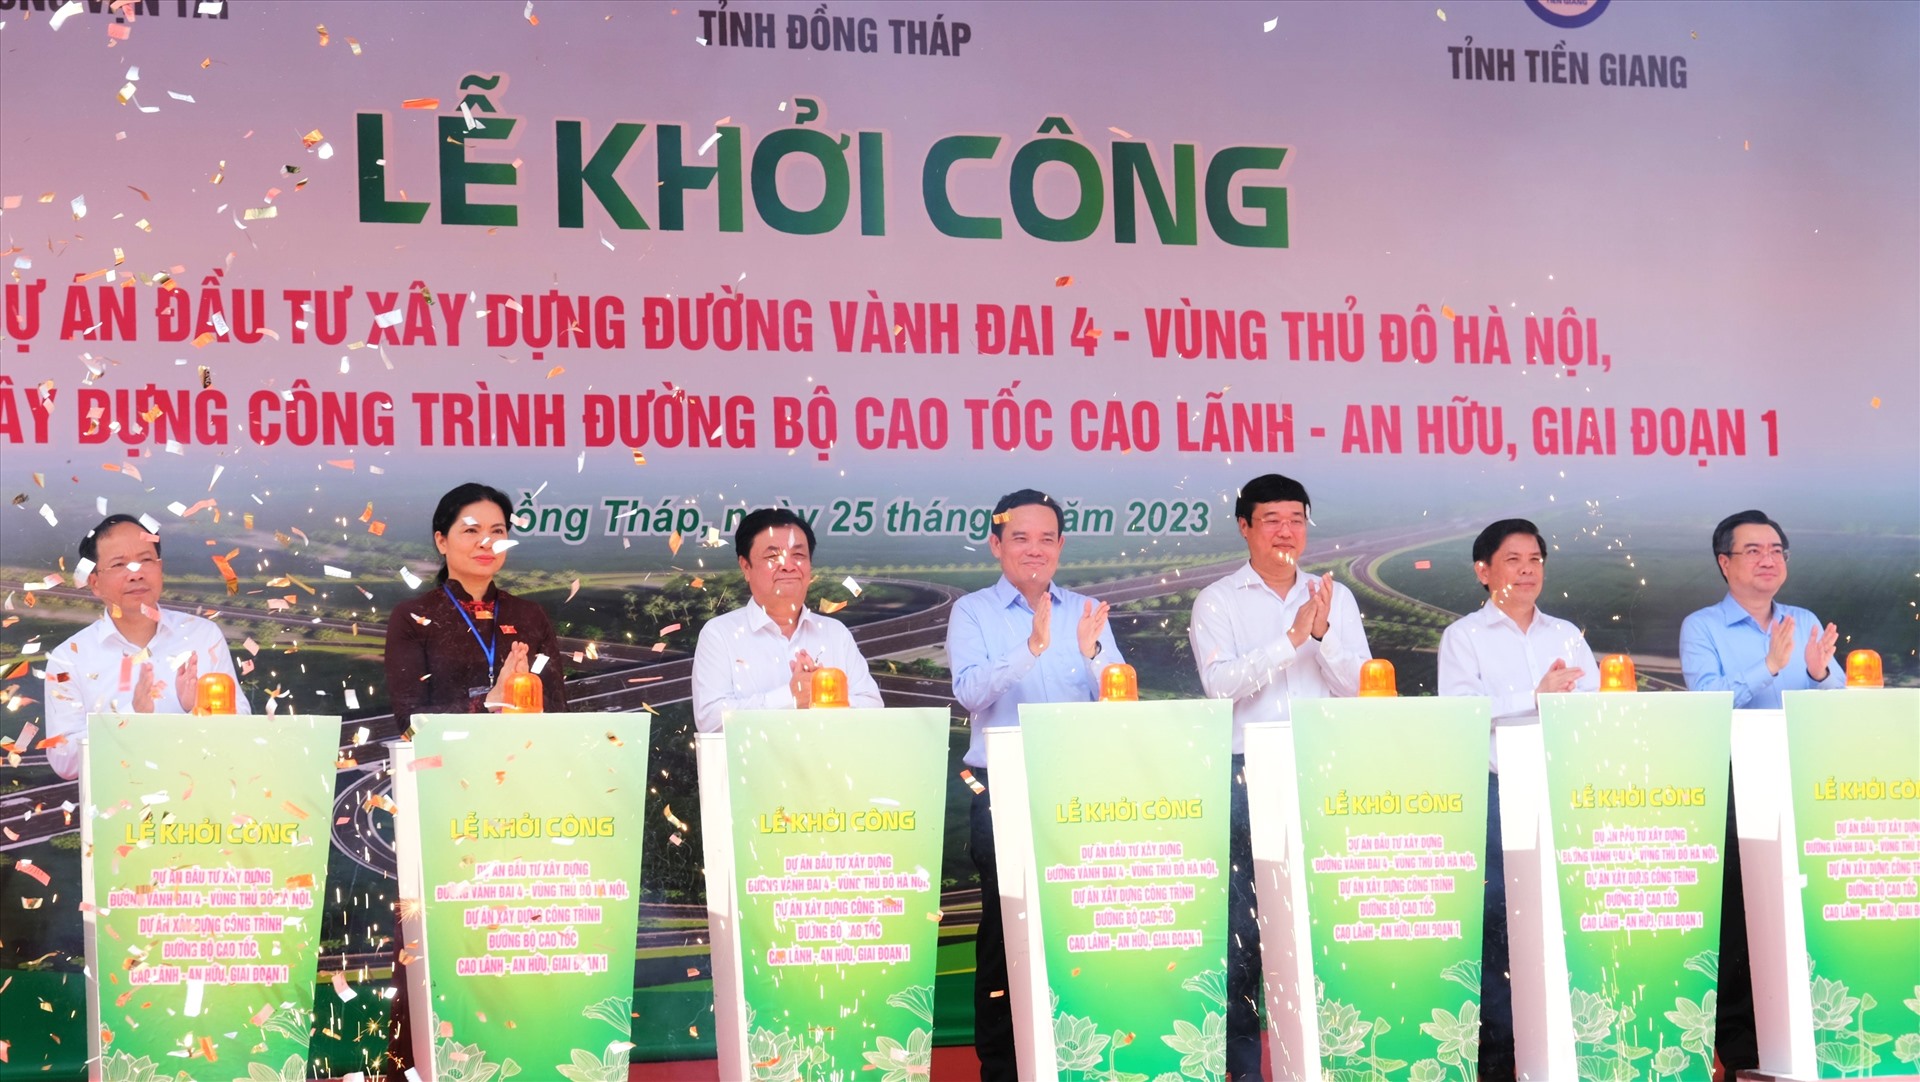 Phó Thủ tướng Chính phủ Trần Lưu Quang cùng lãnh đạo trung ương và địa phương thực hiện nghi thức khởi công cao tốc Cao Lãnh - An Hữu, giai đoạn 1. Ảnh: Phong Linh